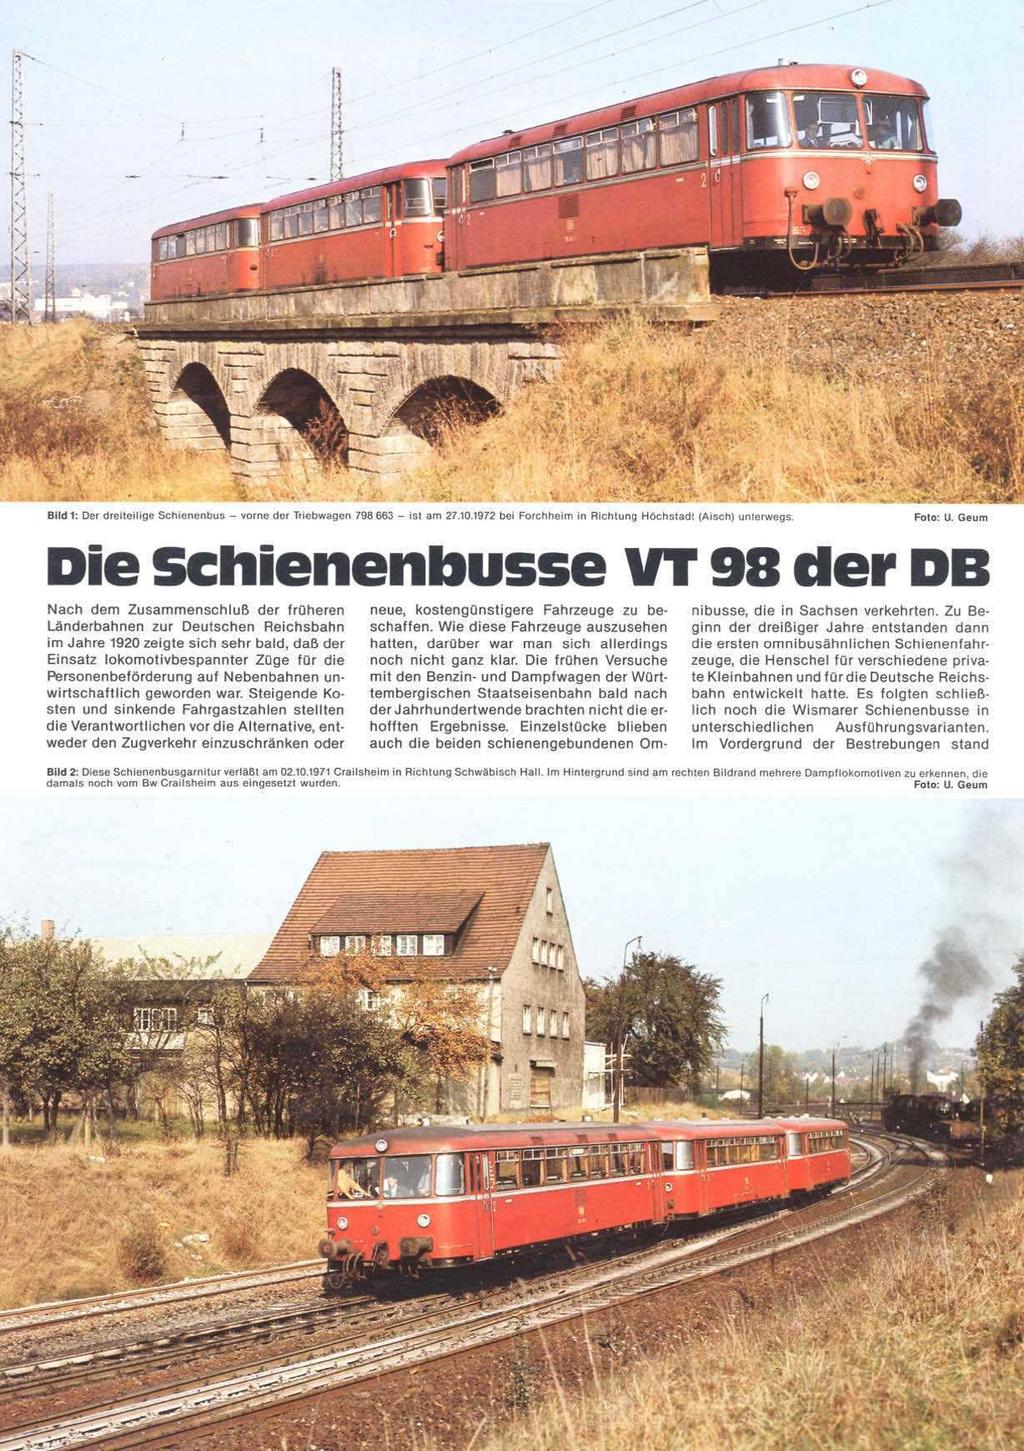 Iteahge Schienenbus - Die Schienenbusse Nach dem Zusammenschluß der früheren Länderbahnen zur Deutschen Reichsbahn im Jahre 1920 zeigte sich sehr bald, daß der Einsatz lokomotivbespannter Züge für